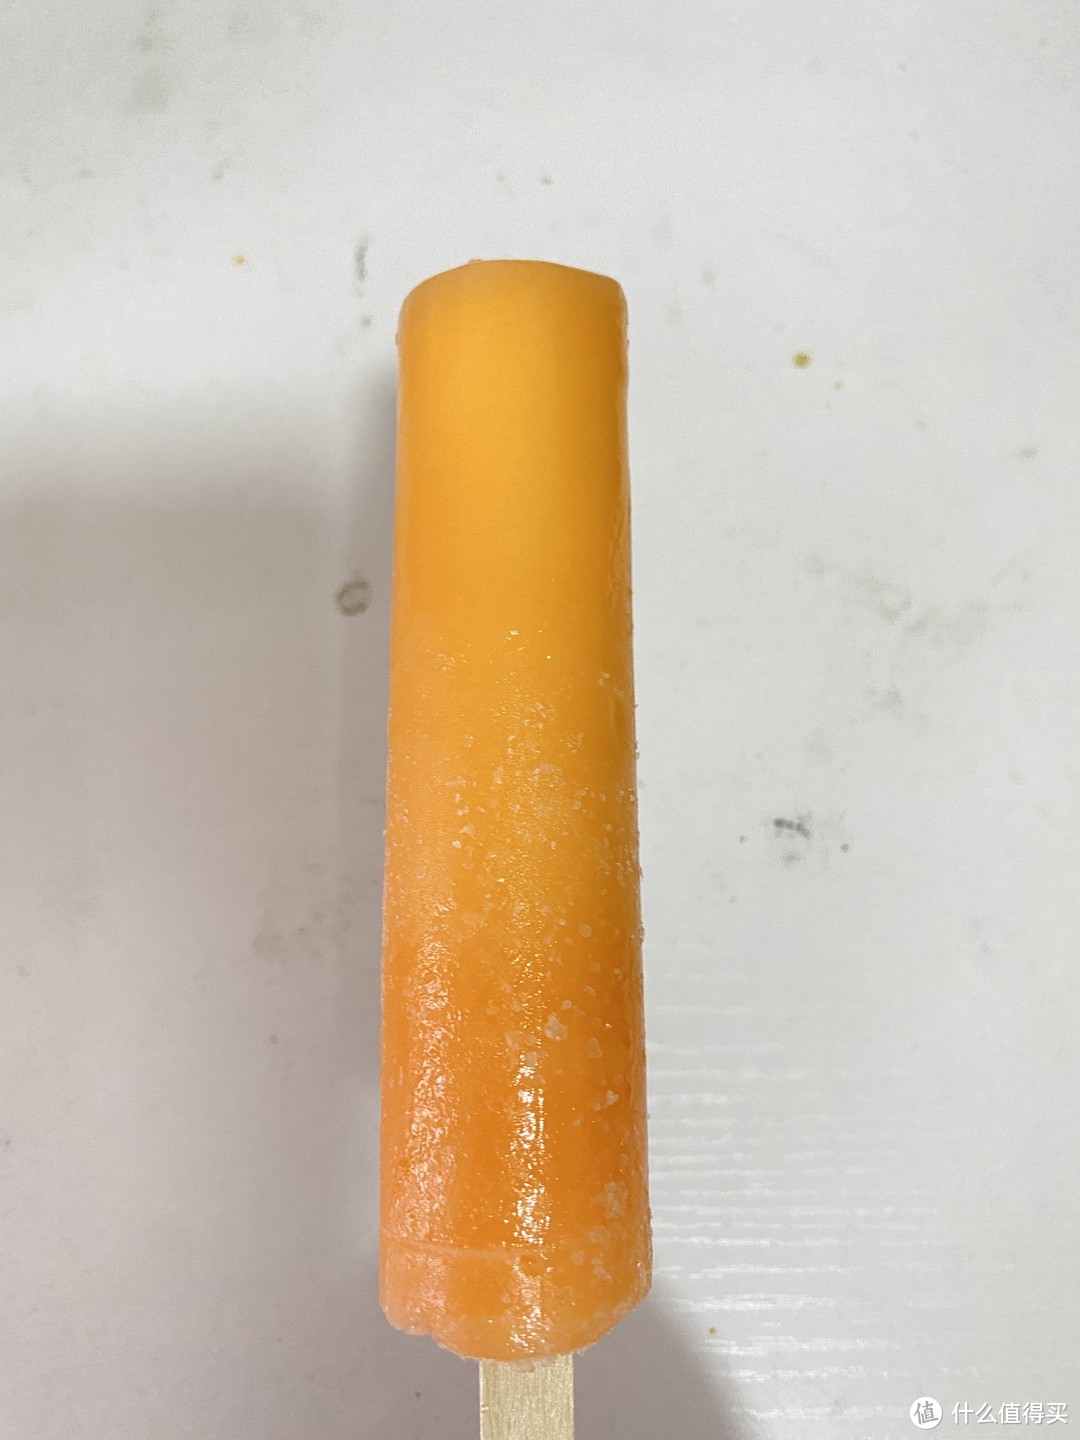 90后的童年没吃过这个香橙炼乳冰棍的人应该不多了吧？